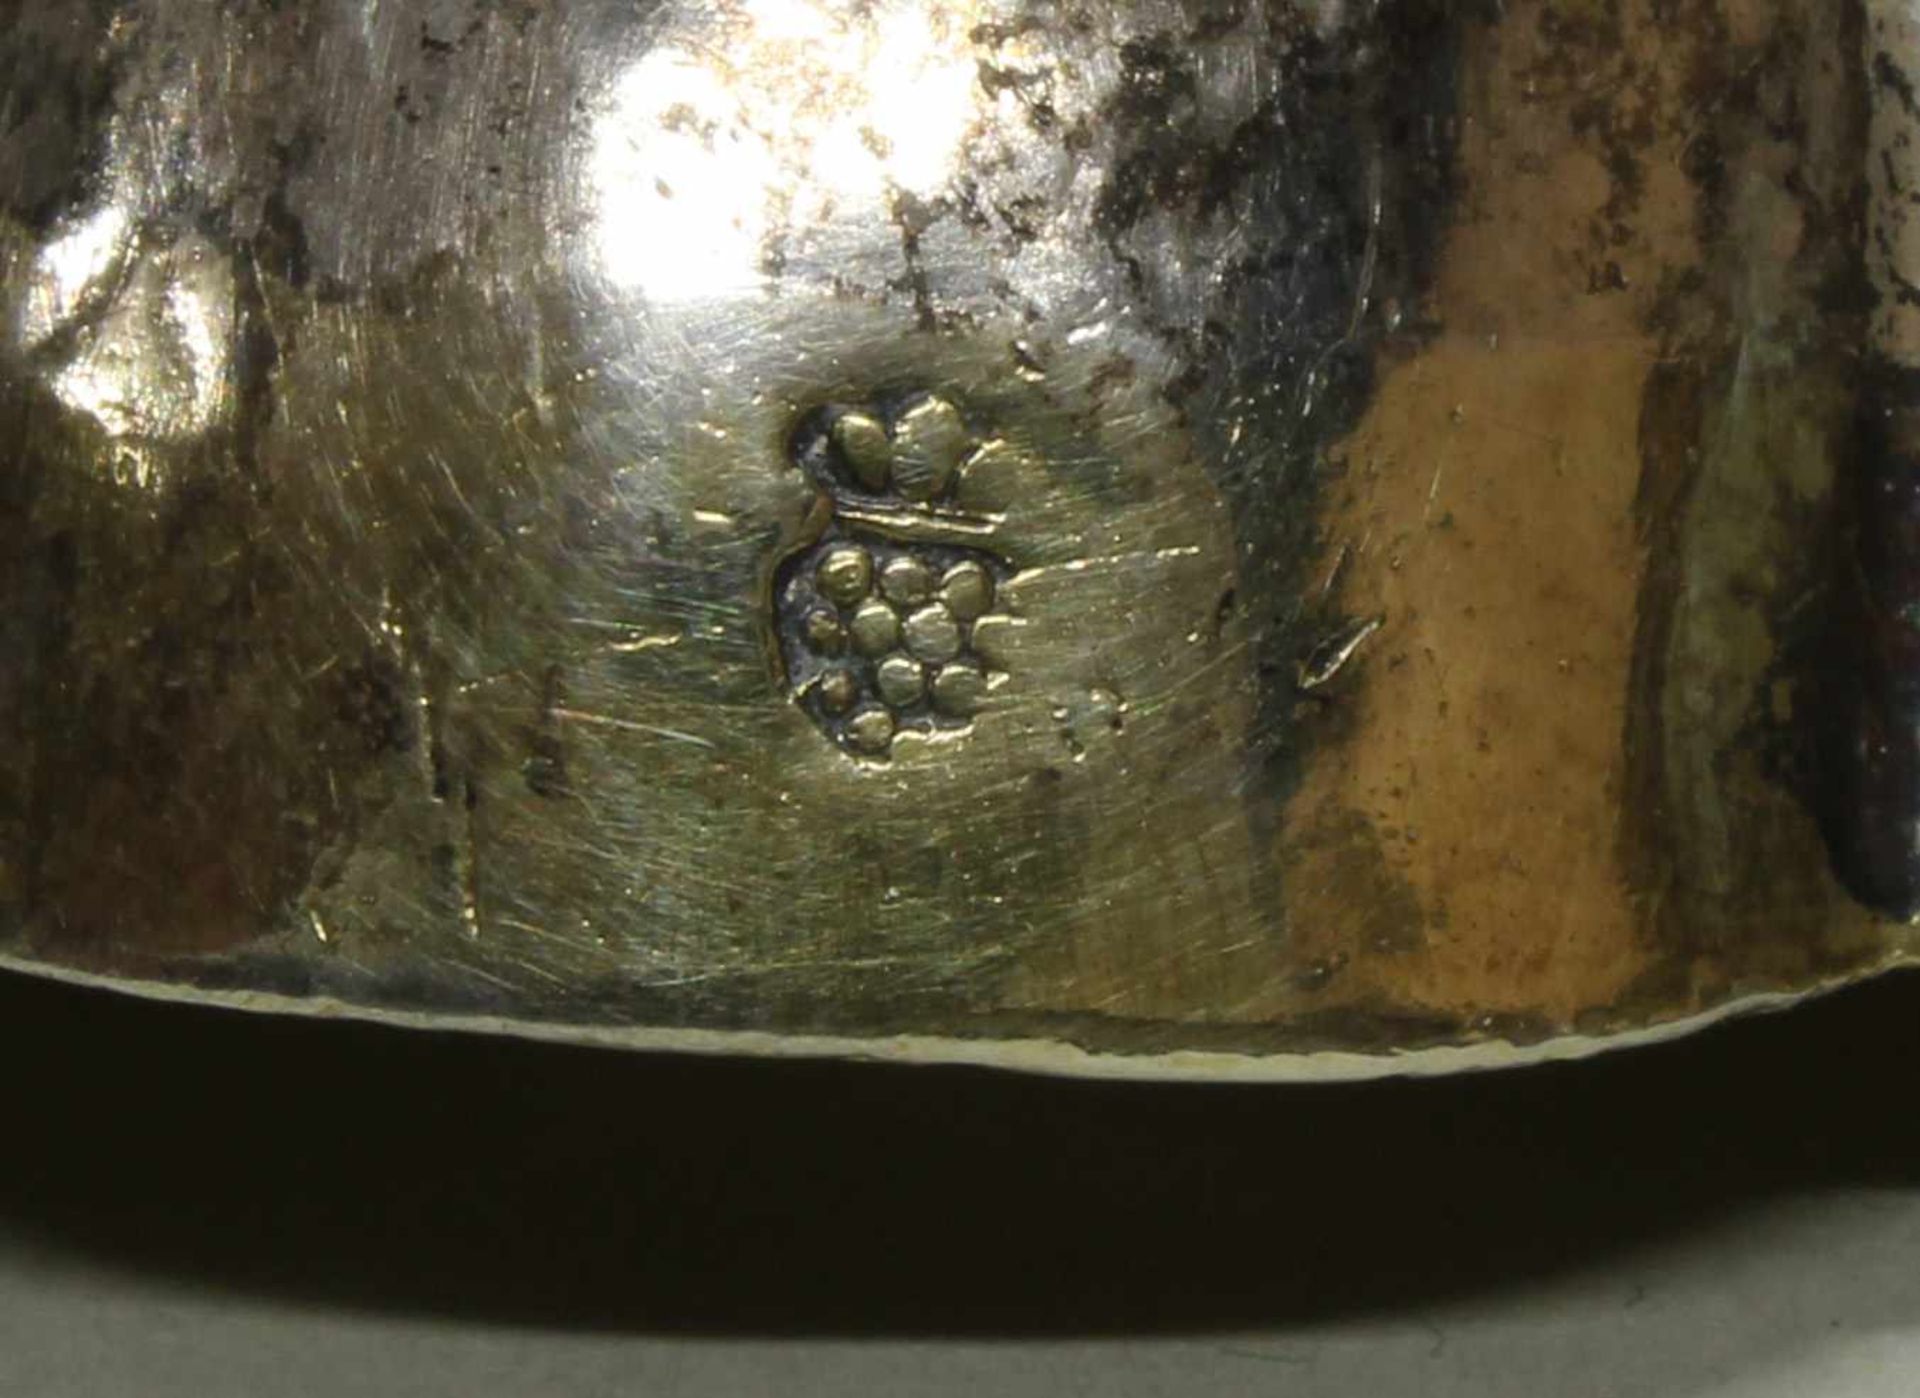 Branntweinschale, "Schwan", Silber, Augsburger Pinienmarke, Tremolierstrich, Meistermarken u.a. wohl - Image 13 of 16